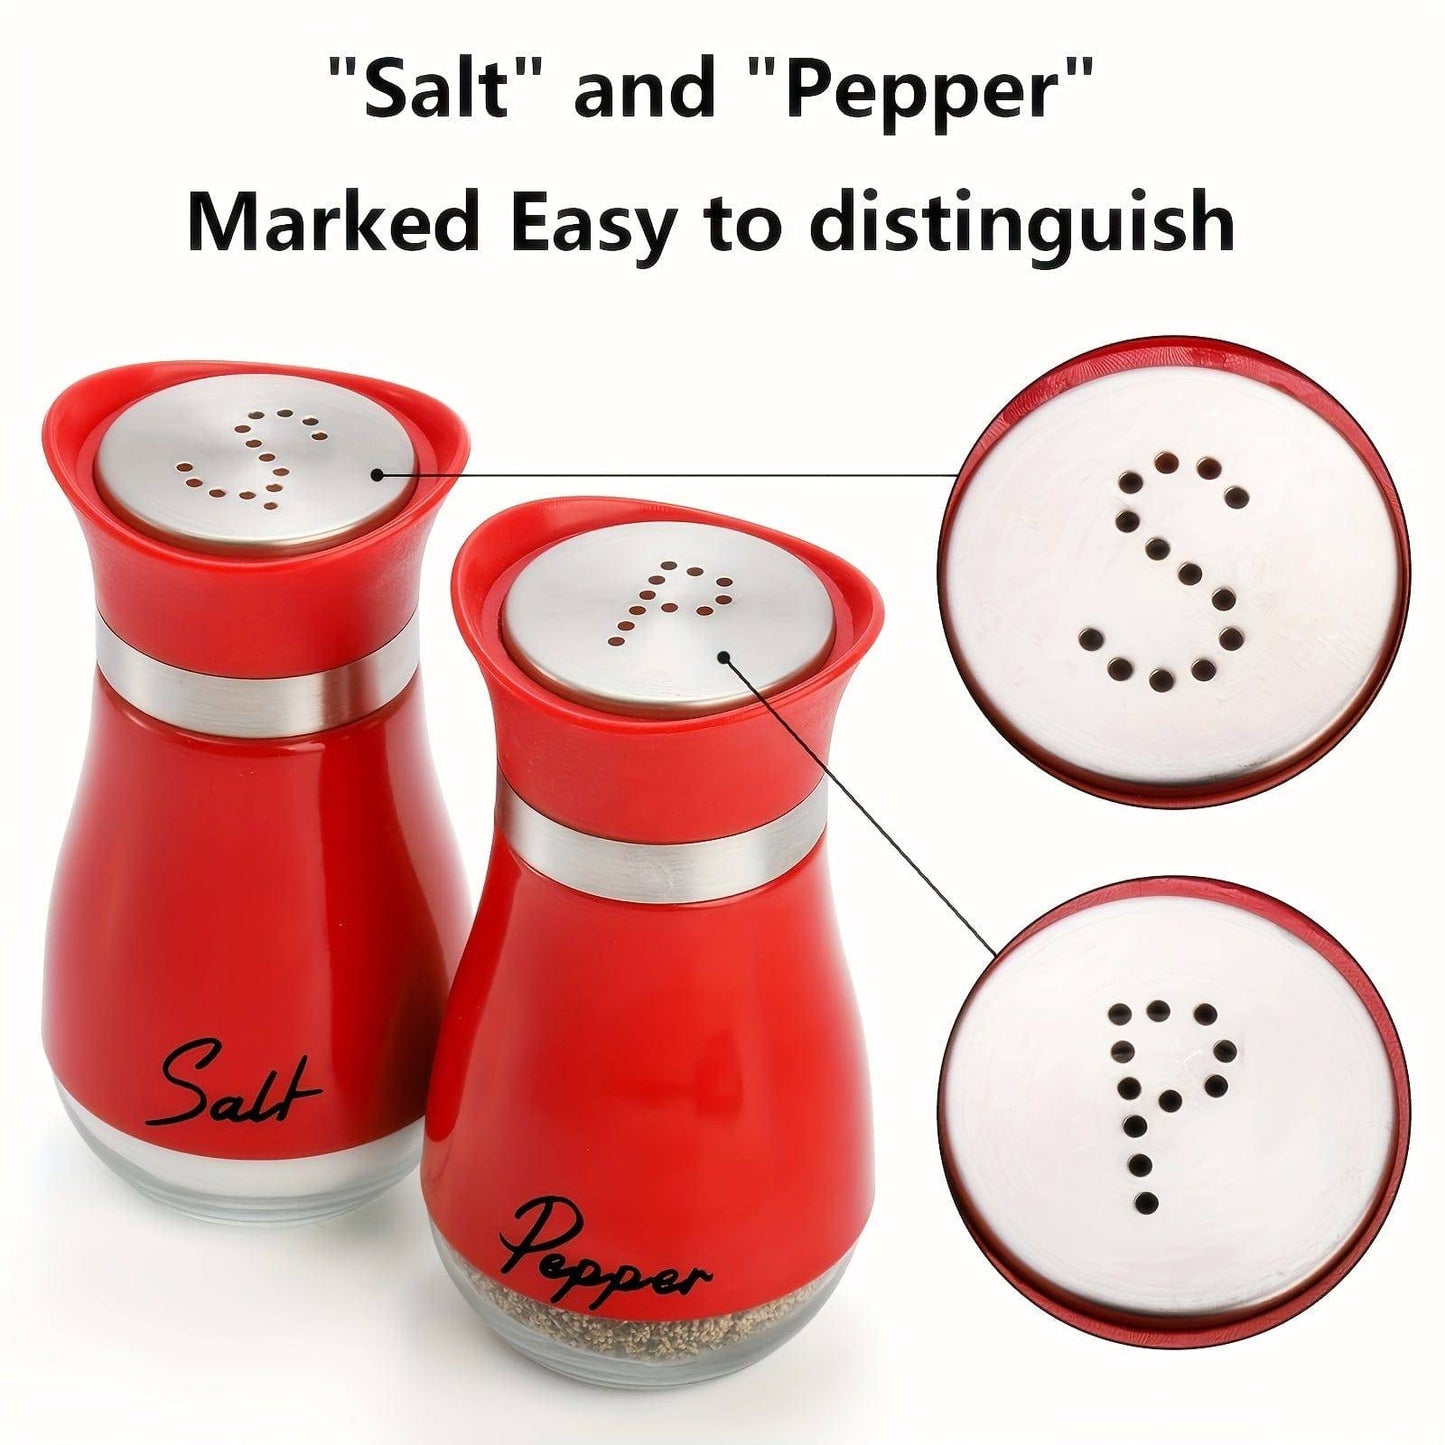 2-in-1 Salz- und Pfefferstreuer mit verstellbarem Ausgießer